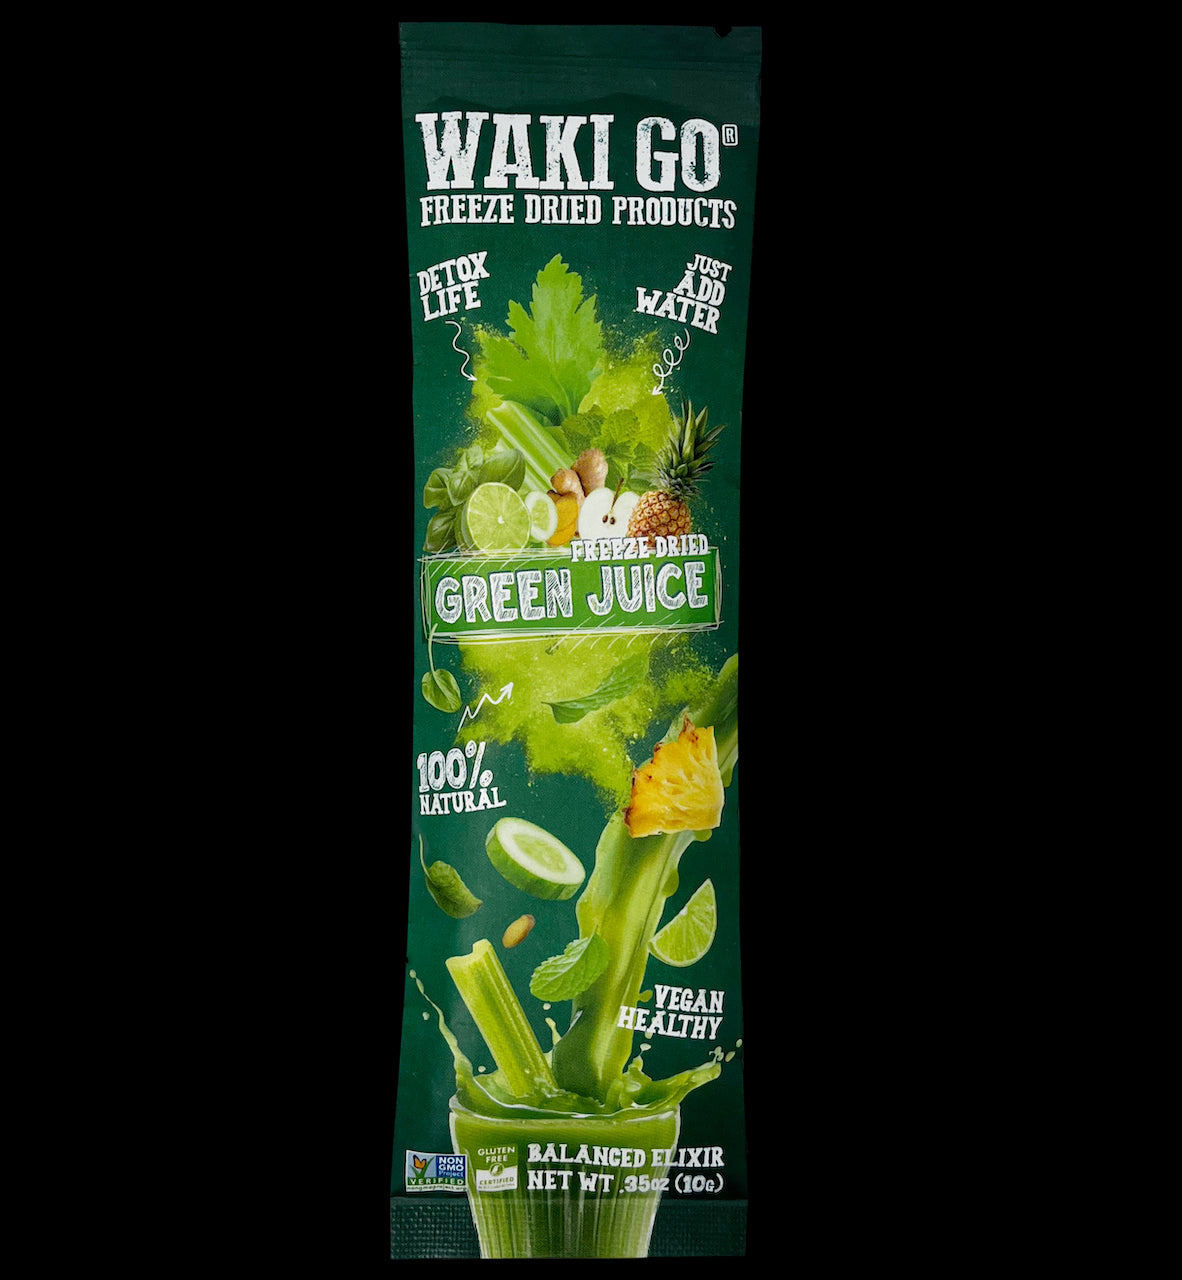 WAKI GO Green Juice Balanced Elixir